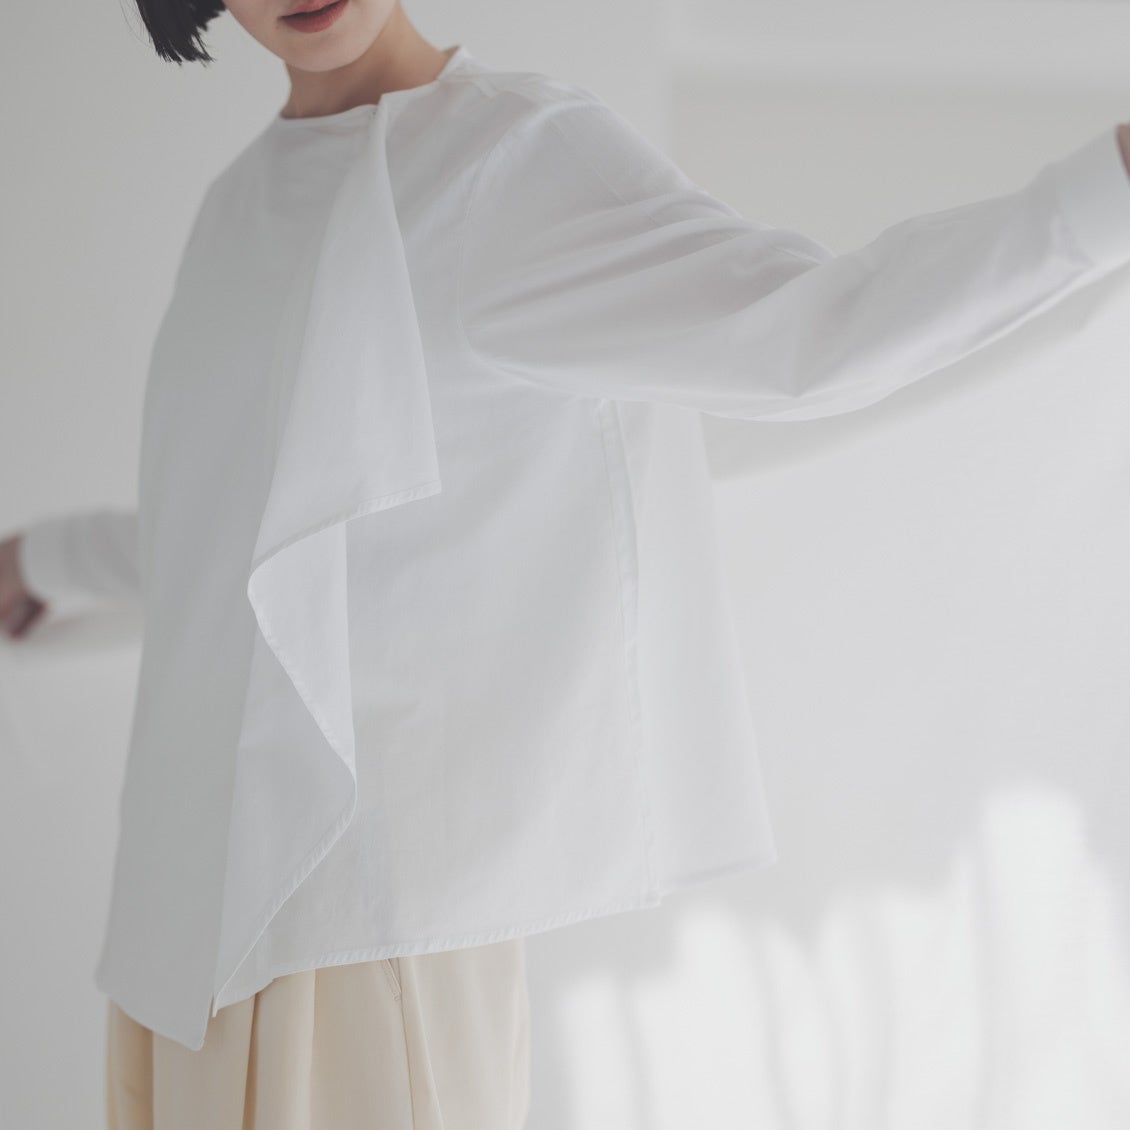 北欧、暮らしの道具店 と ERIKO YAMAGUCHI が初コラボ。浮遊感のある真っ白なブラウス ”hope” を発表。